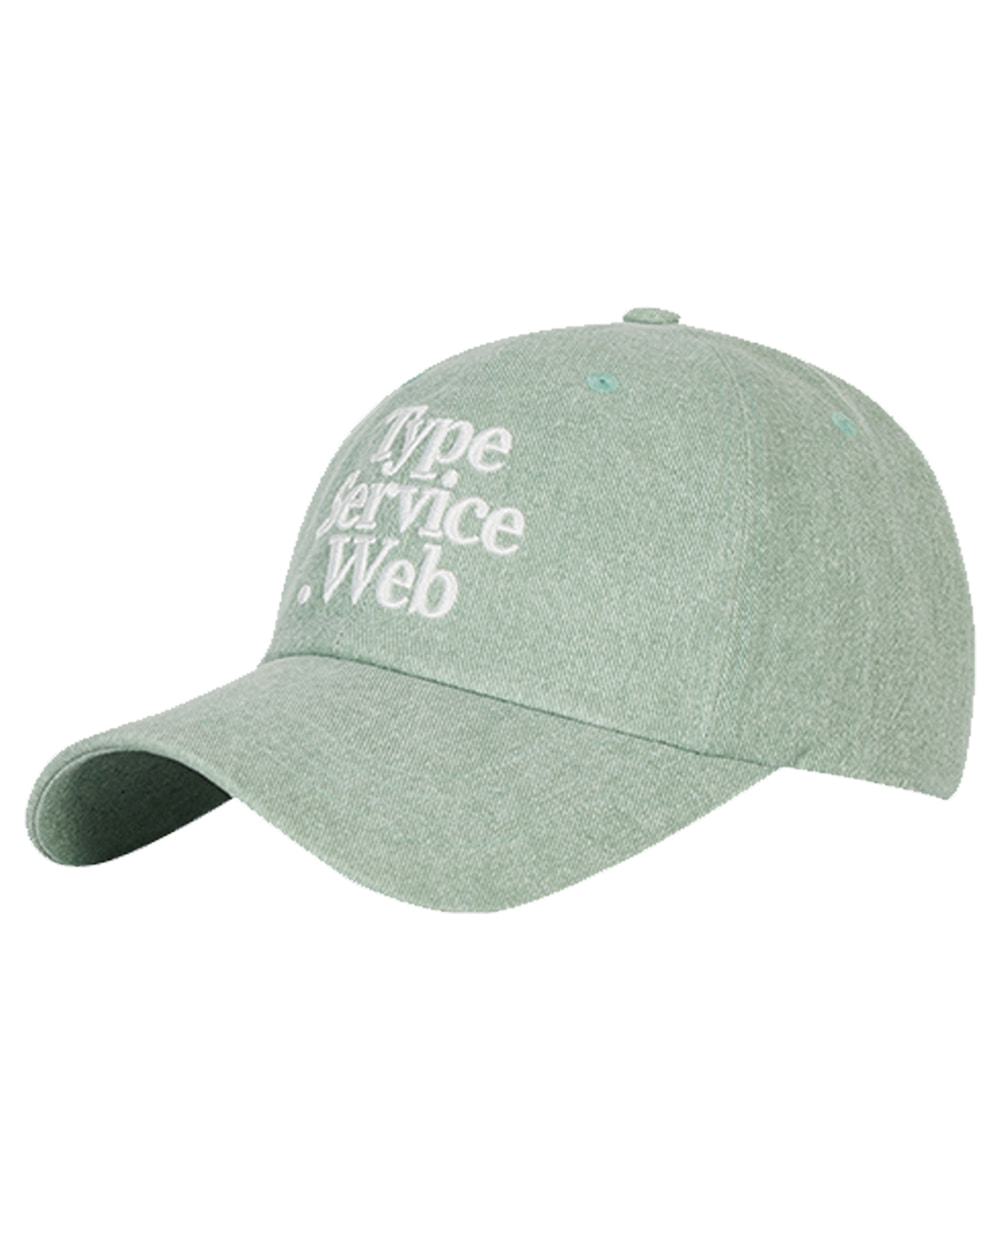 타입서비스 Typeservice Web Cap (Light green)